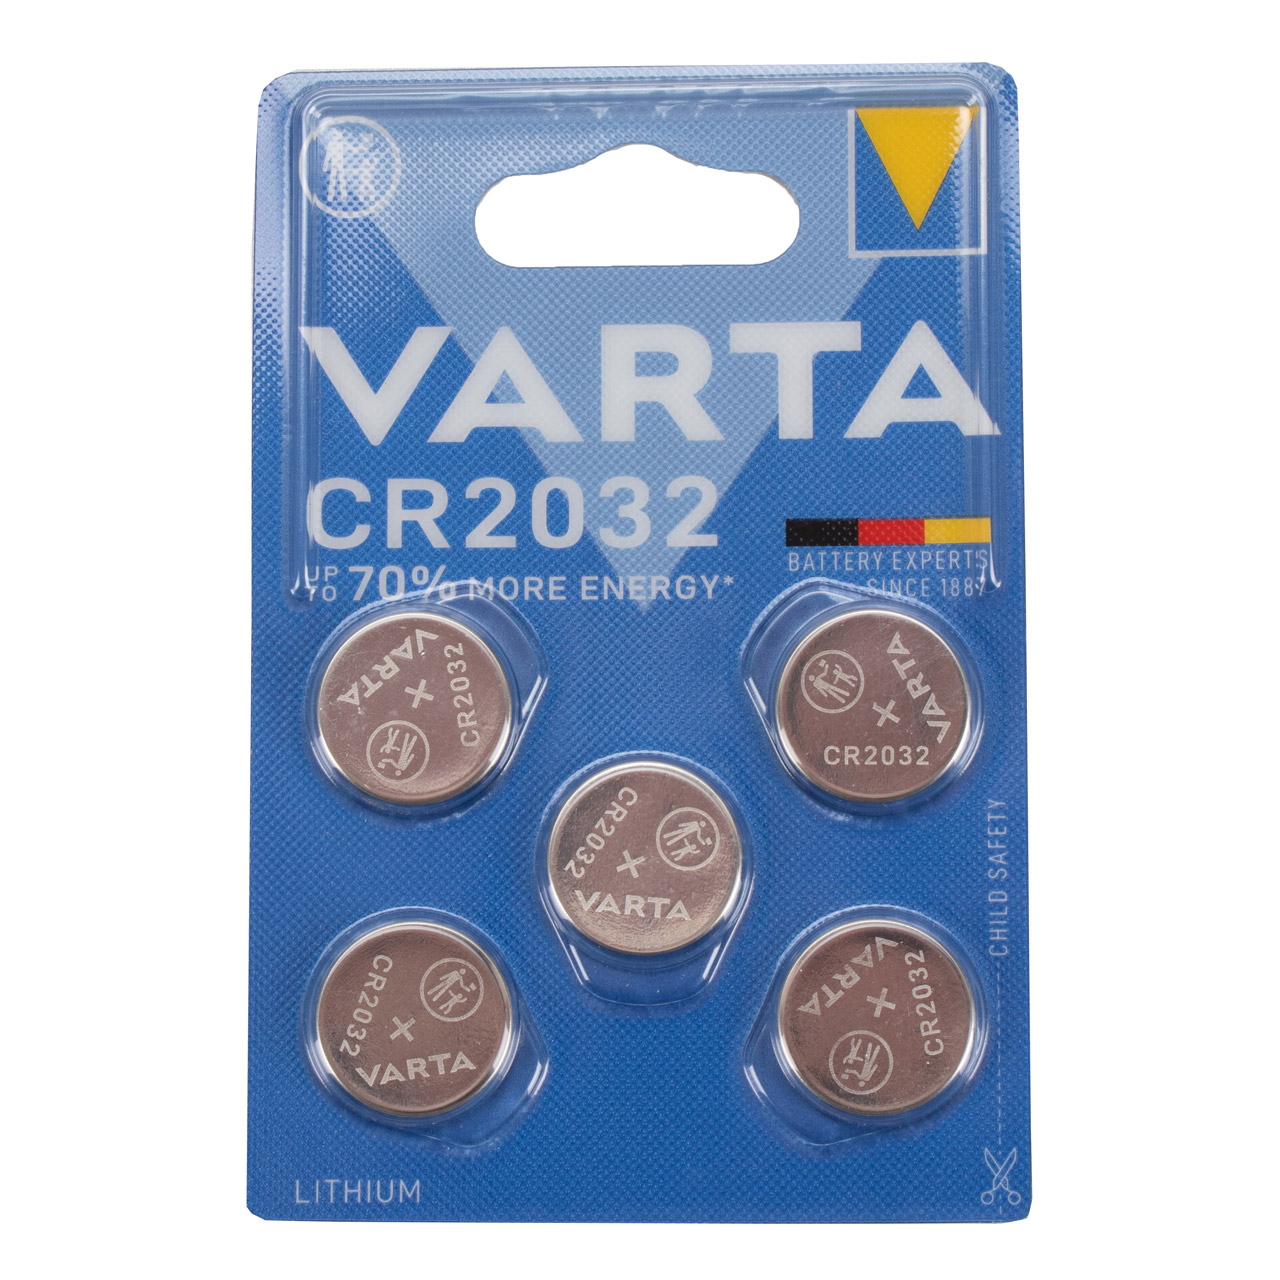 50x VARTA Lithium 3V CR2032 Knopfzelle Knopfbatterie Batterie (MHD 07.2031)